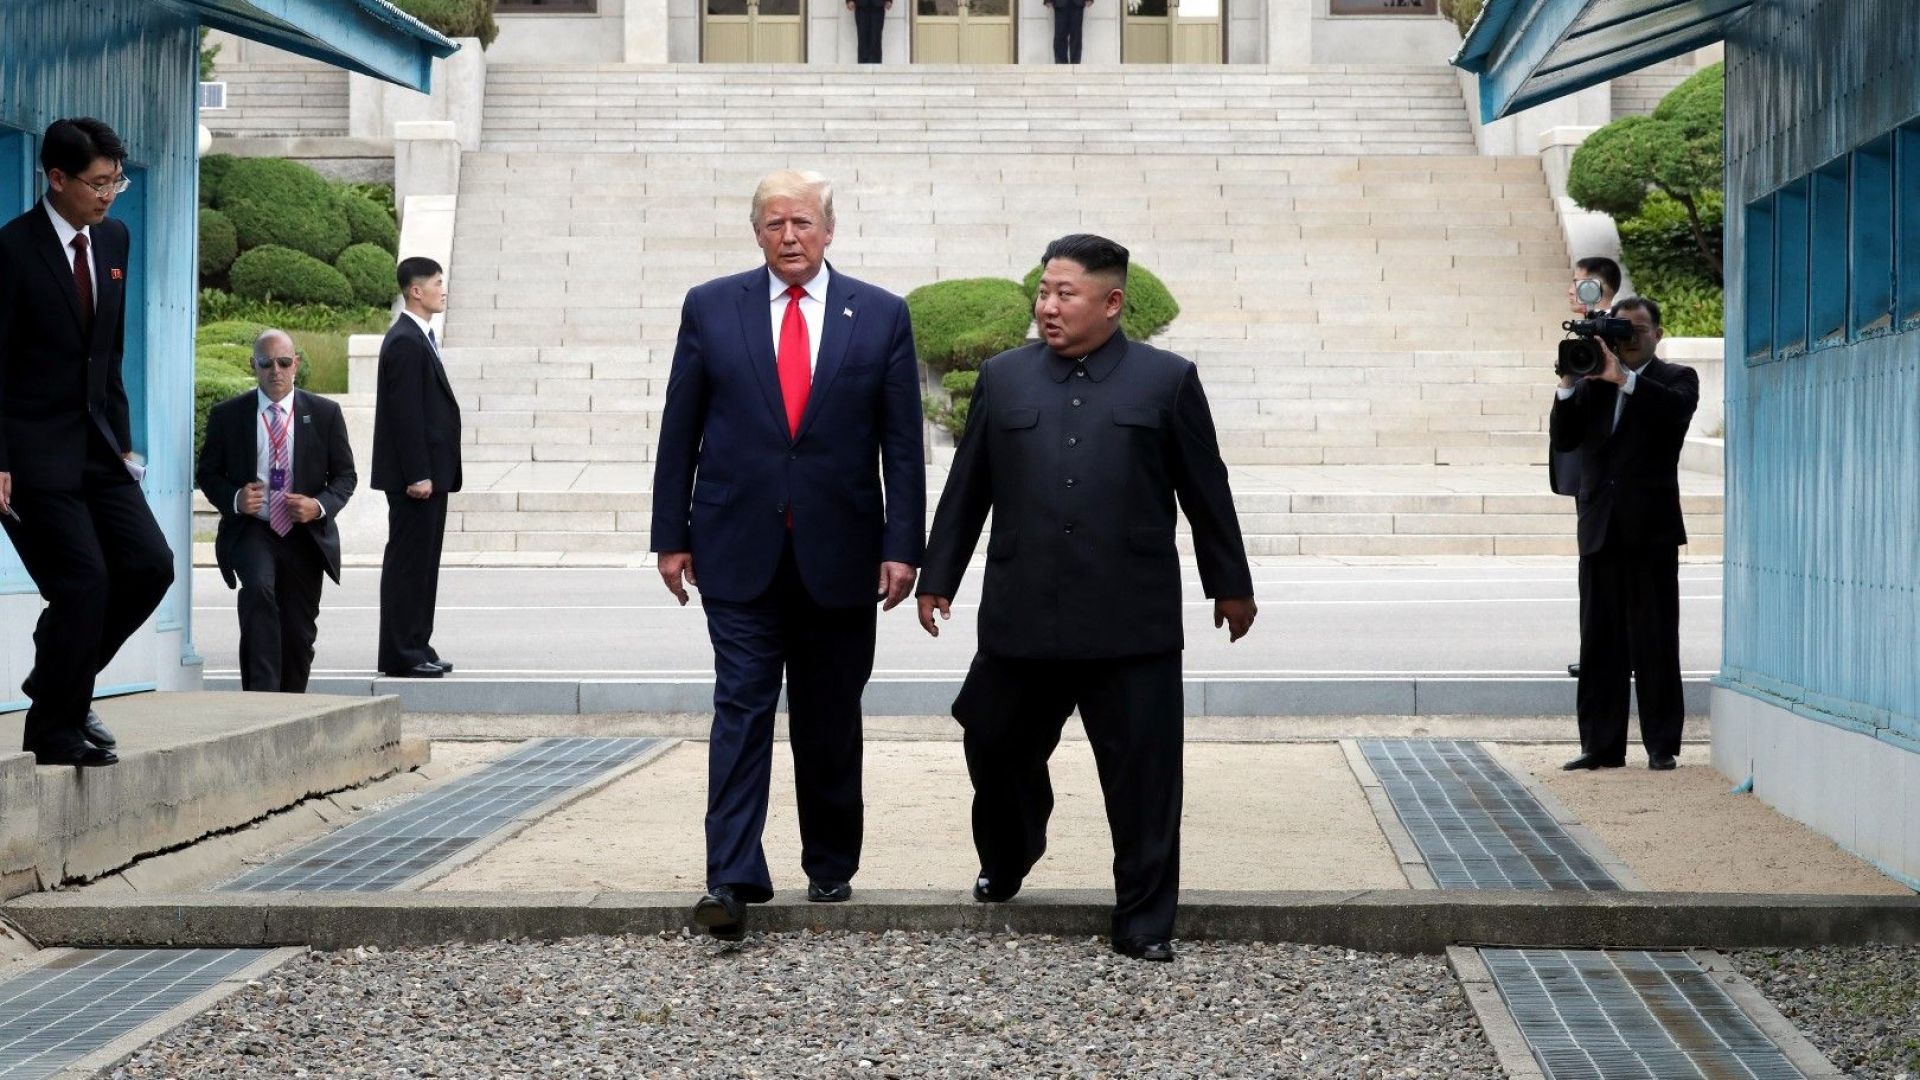 Северна Корея окачестви вчерашната среща между своя лидер Ким Чен ун